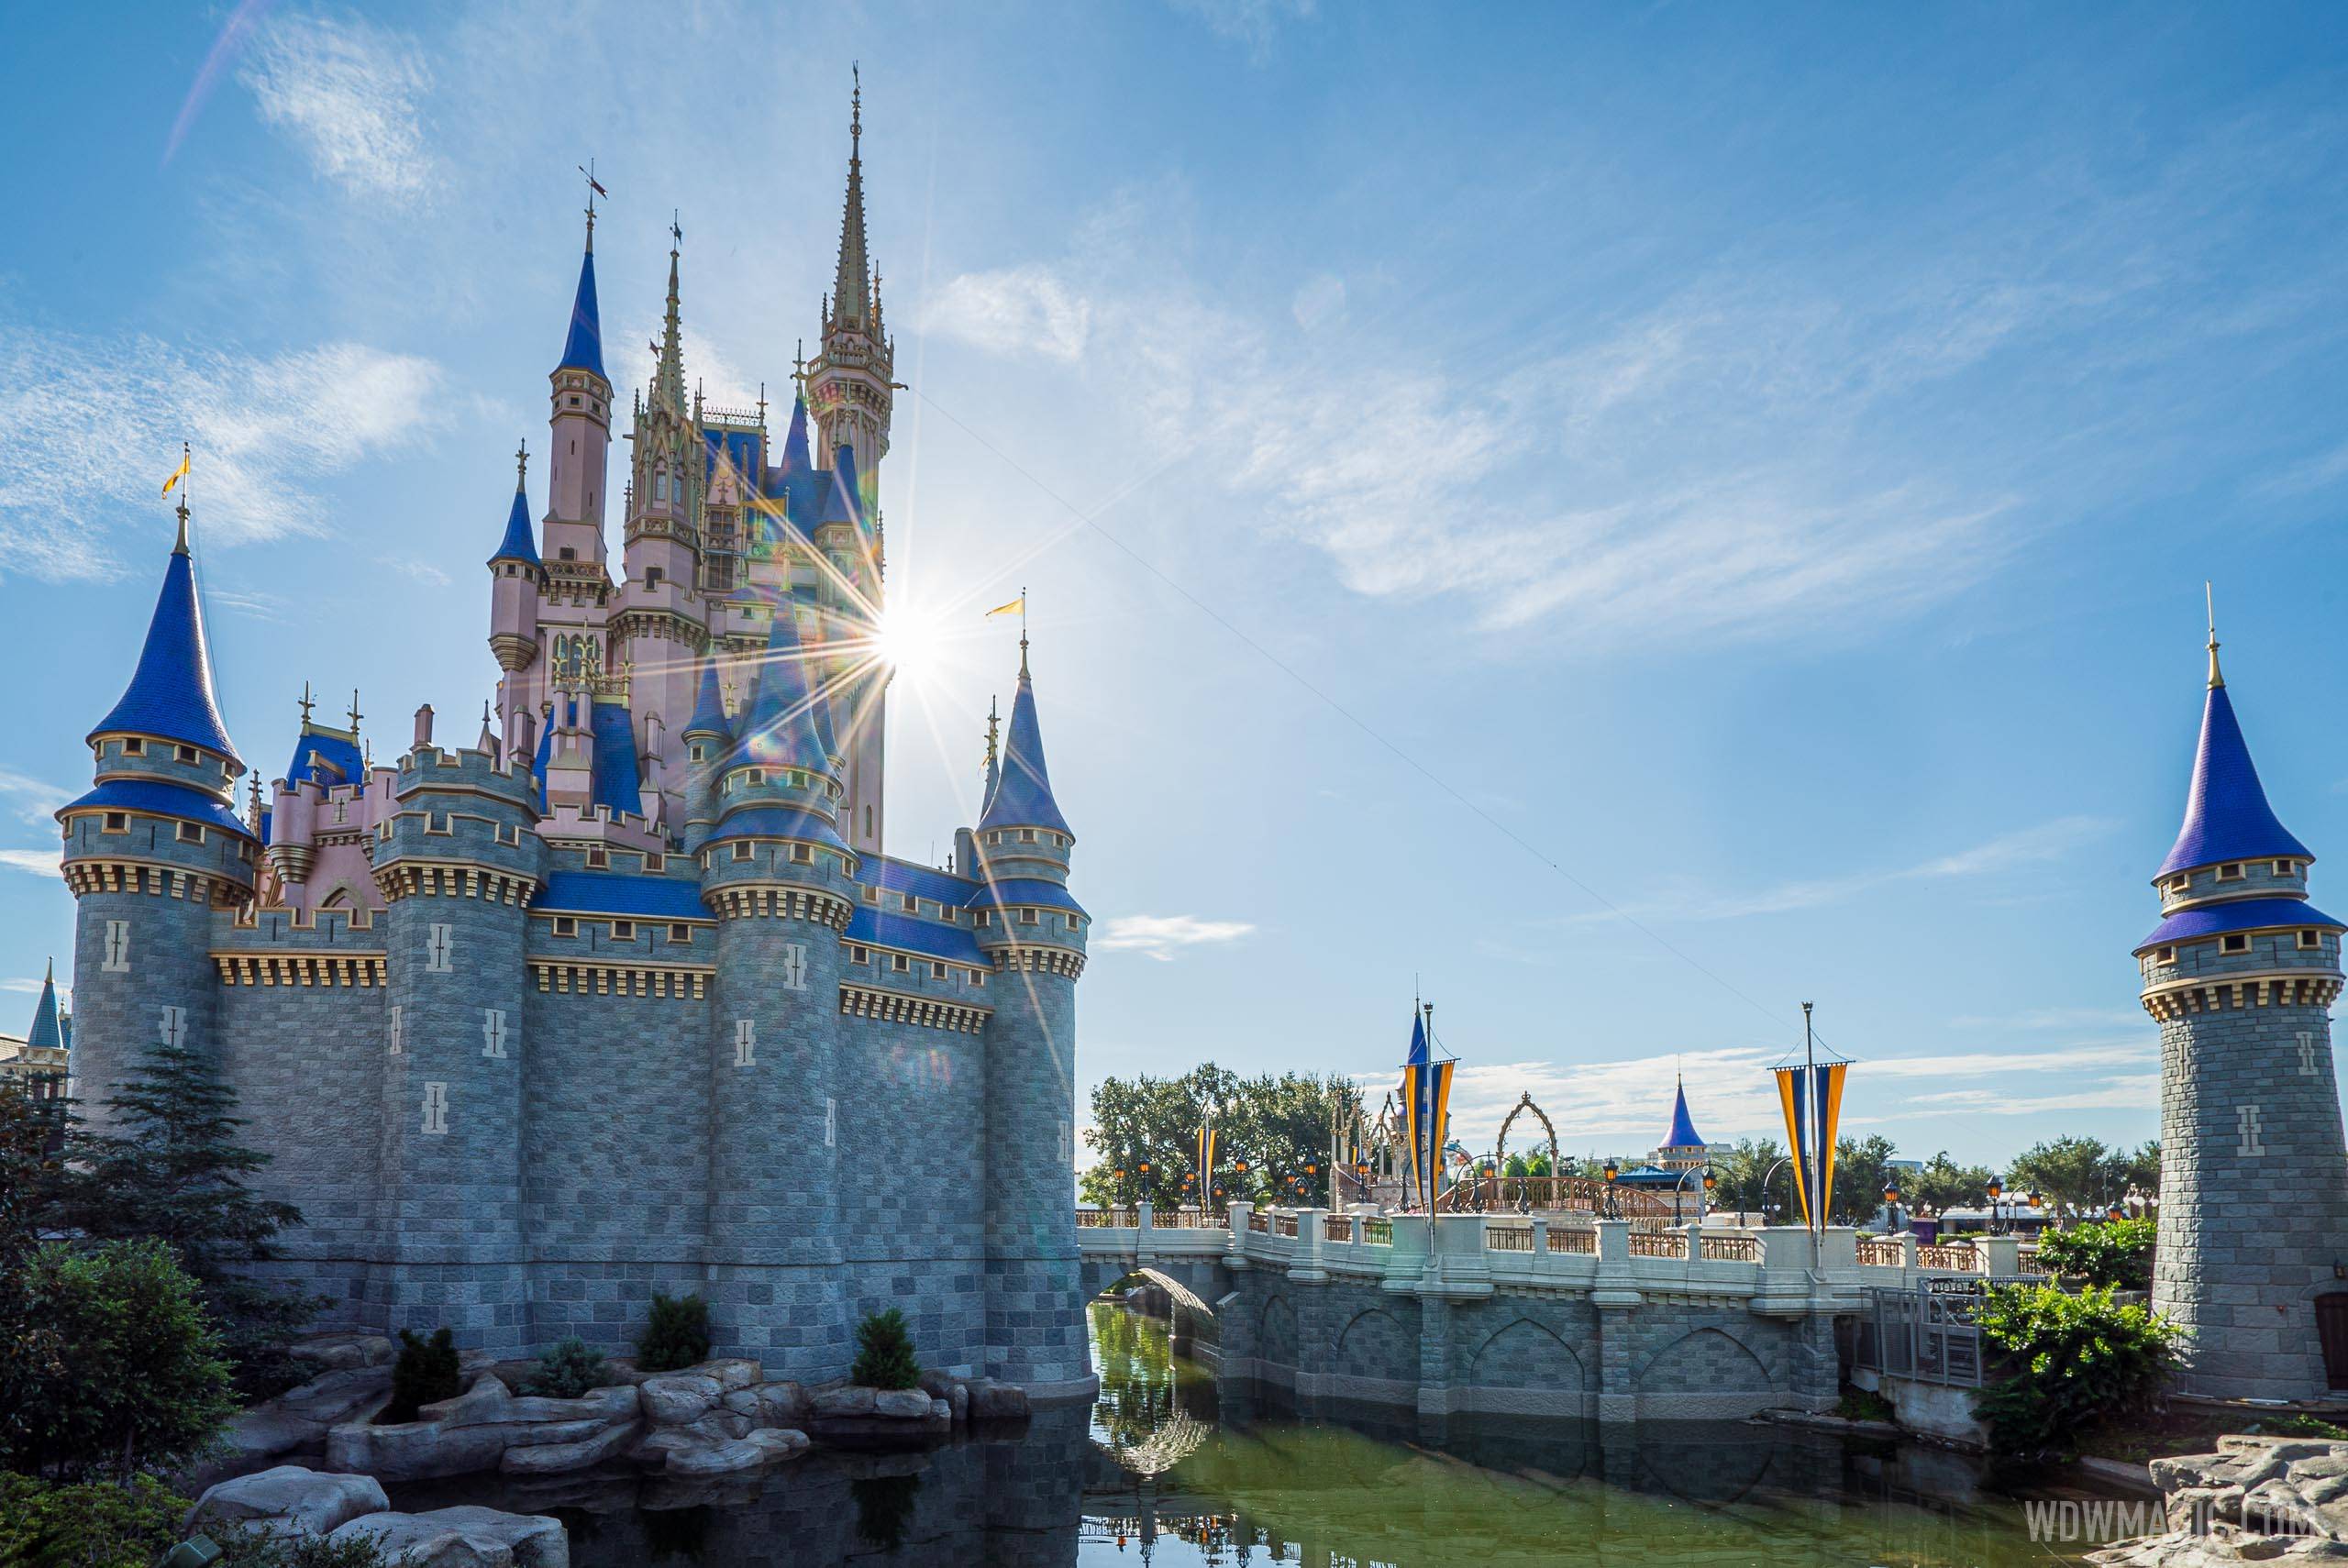 Cinderella Castle 'Beacon of Magic' illuminates the Magic Kingdom for the 50th anniversary